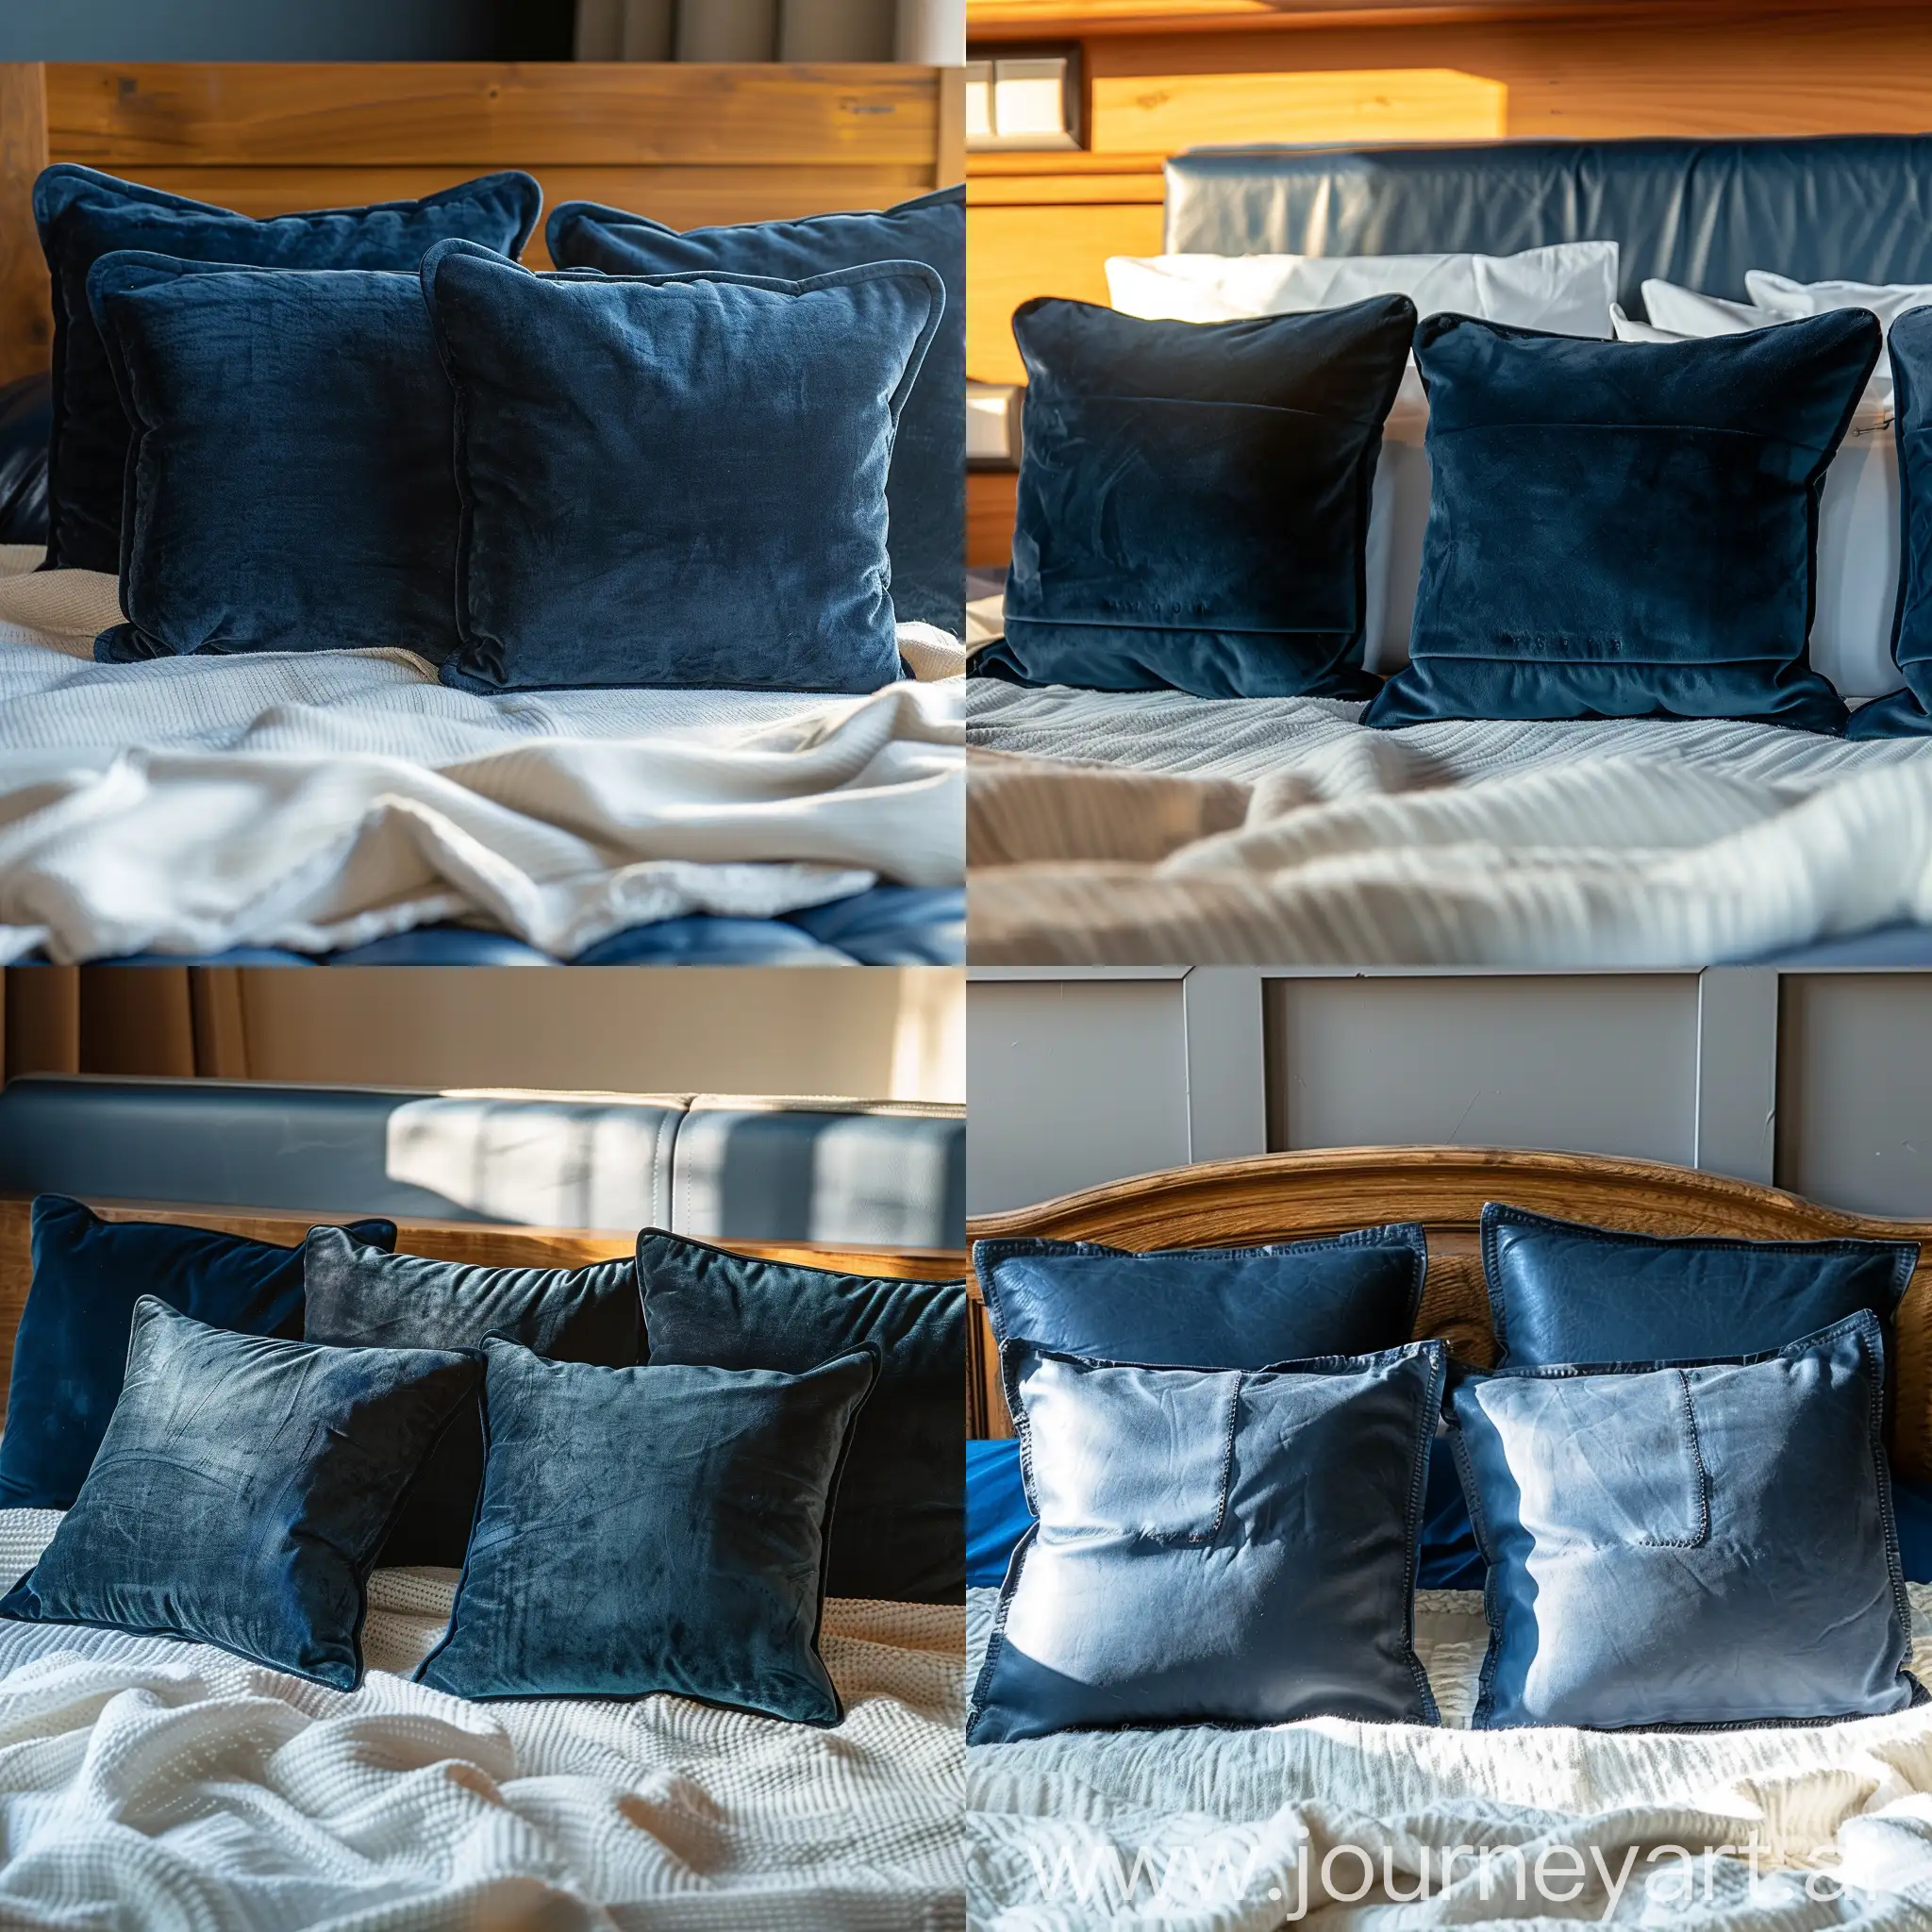 Dettaglio di 4 cuscini blu scuro su una coperta bianca. Testata del letto legno e imbottitura in pelle blu. Luce calda del mattino